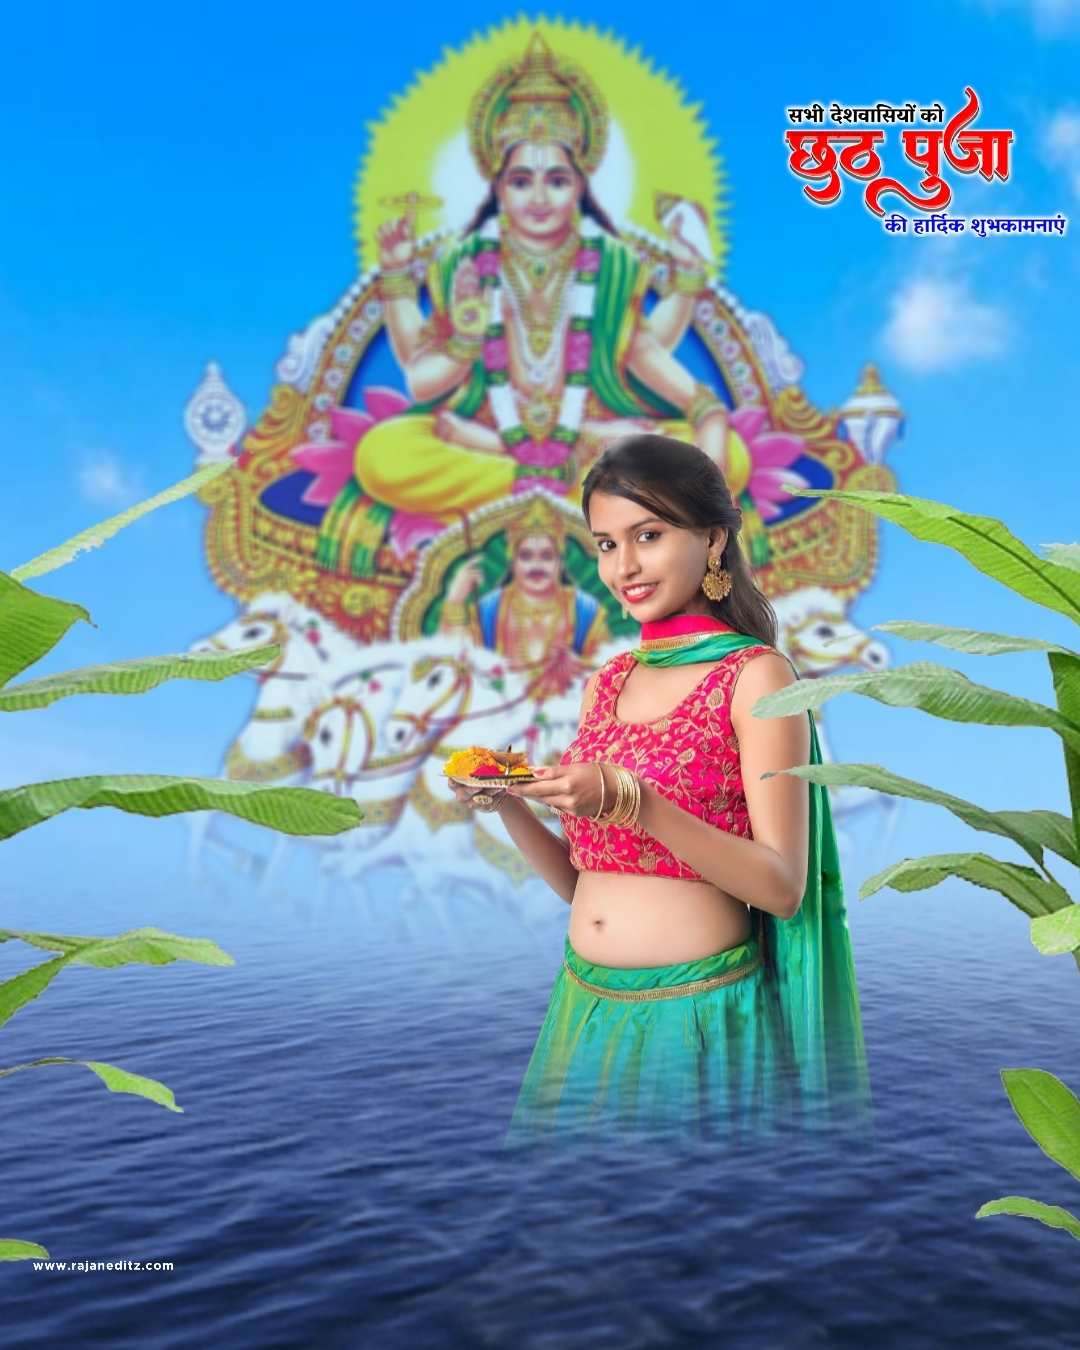 chhath puja backgrounds_Chhath Puja backgrounds_chhath puja backgrounds_Rajan editz